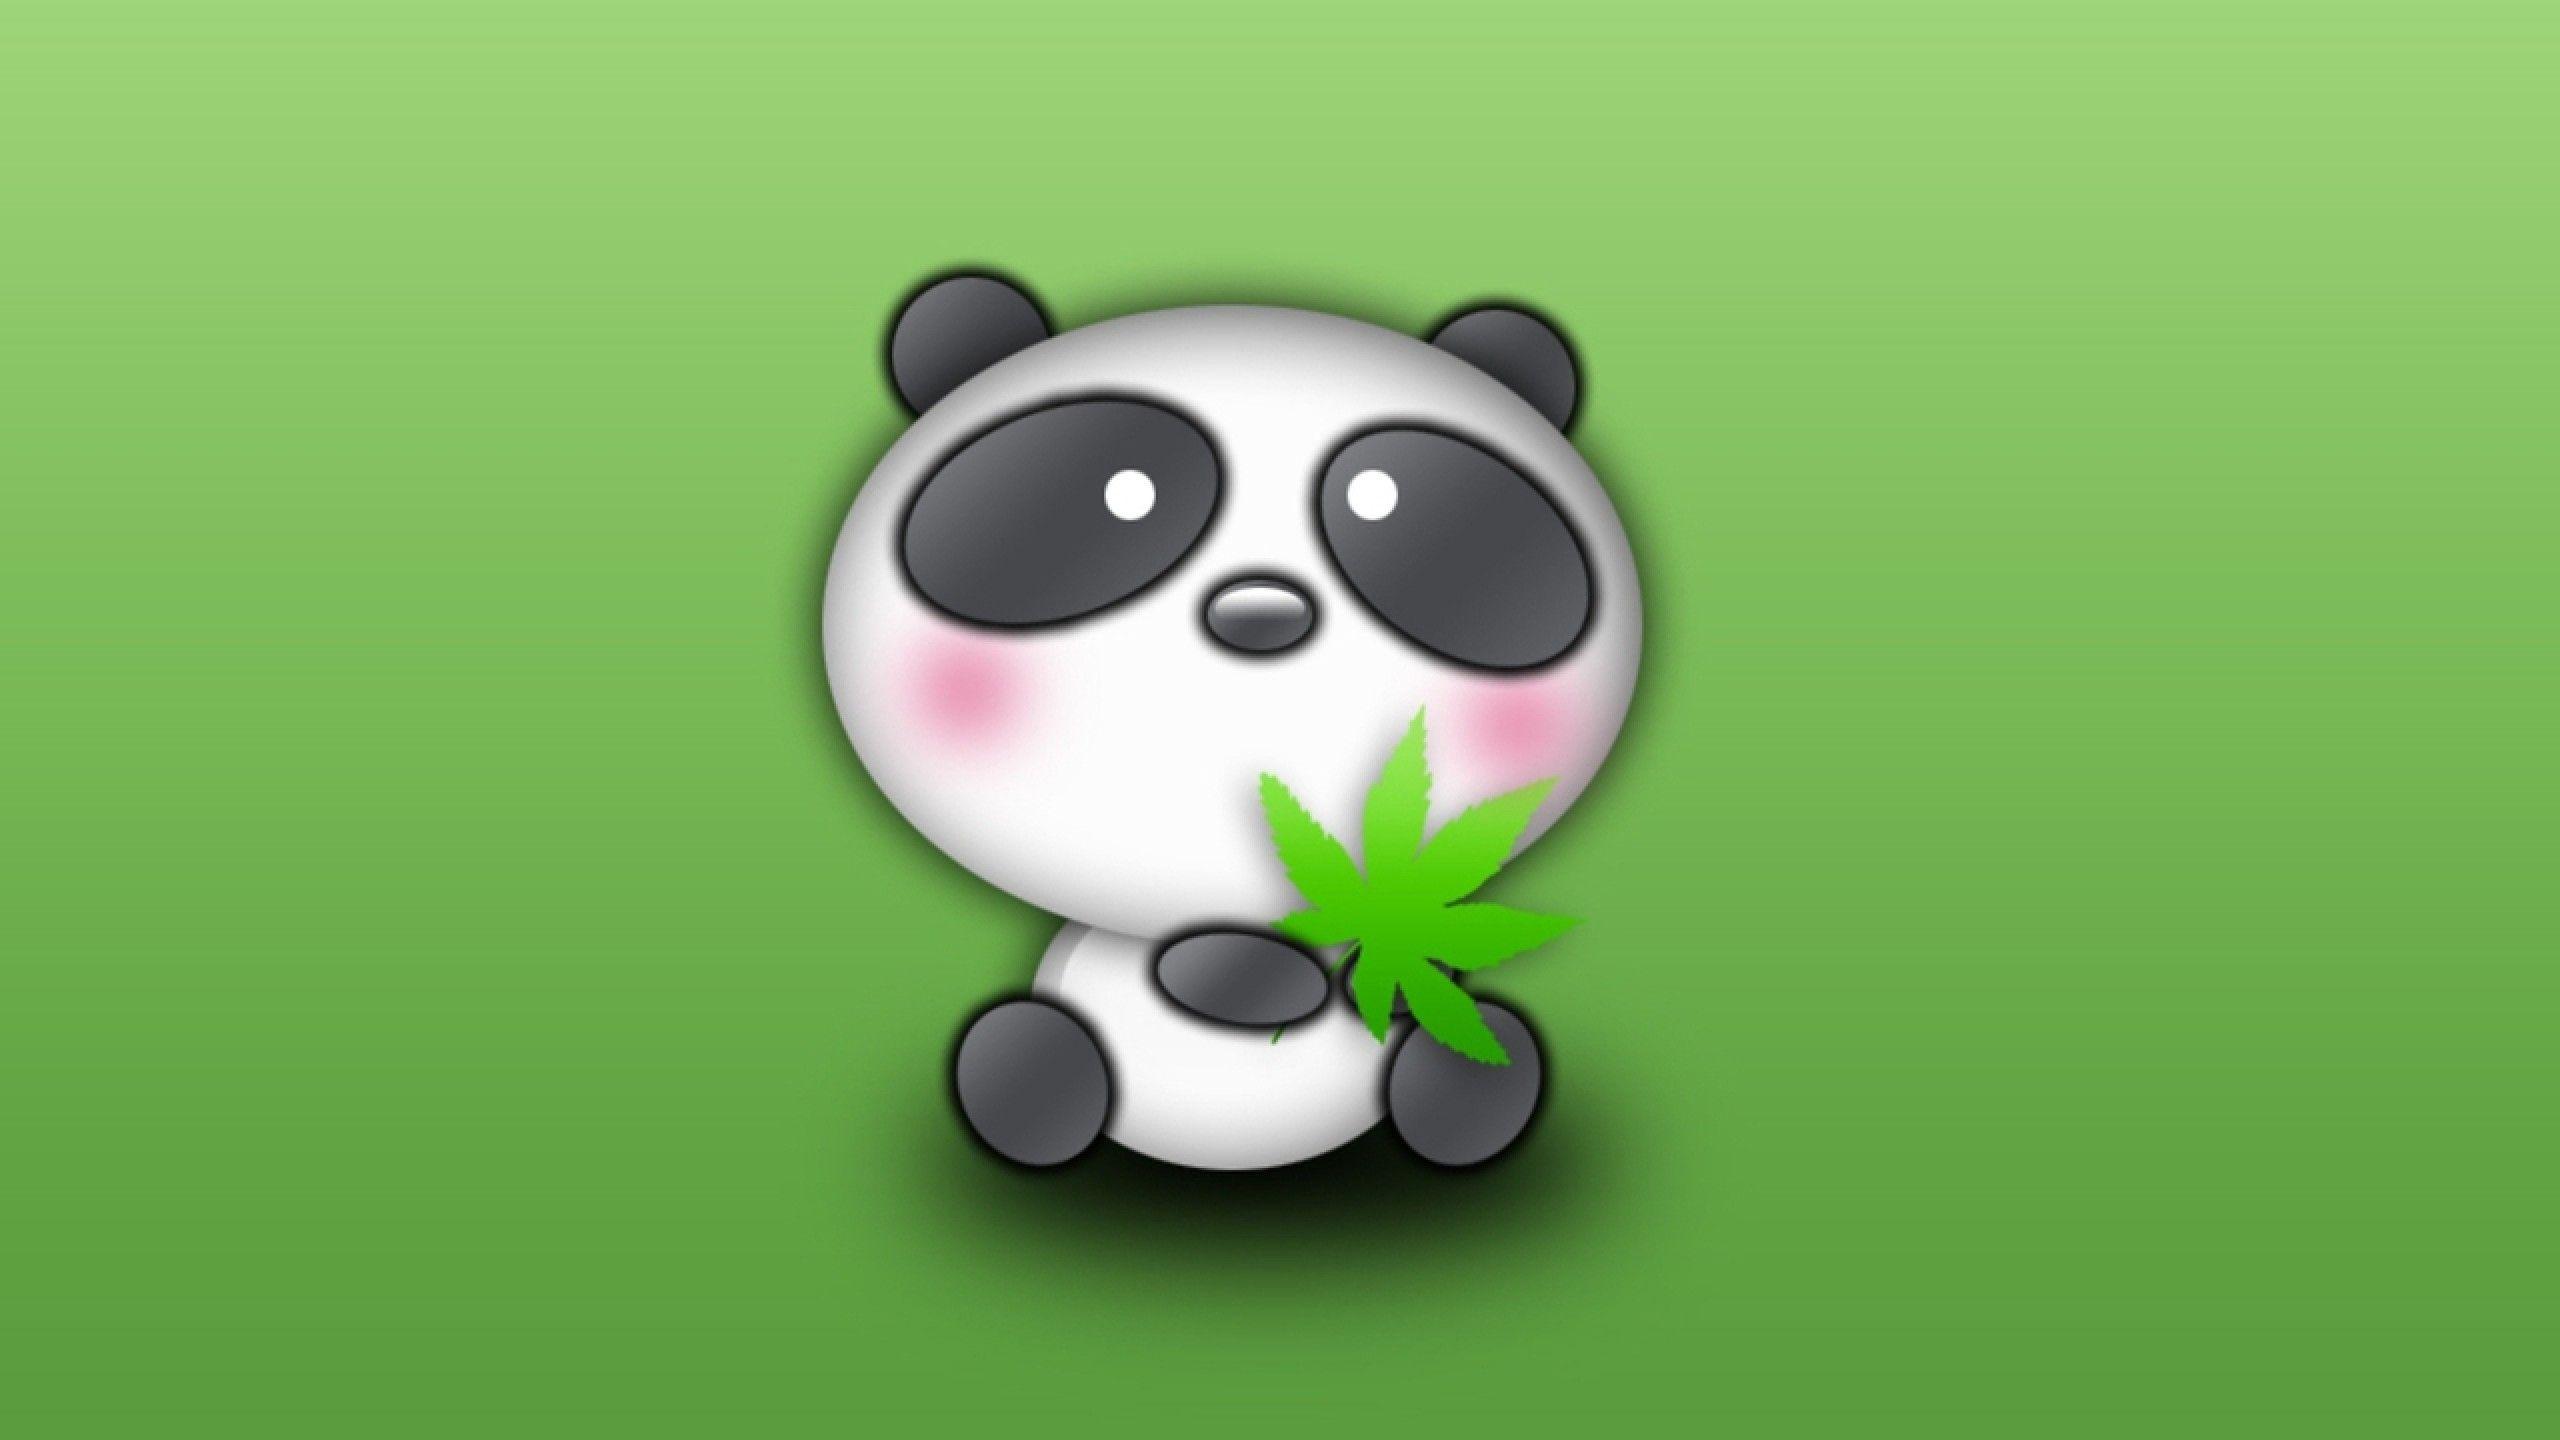 Cute Panda Cartoon Desktop Wallpaper. Cute & Funny Things